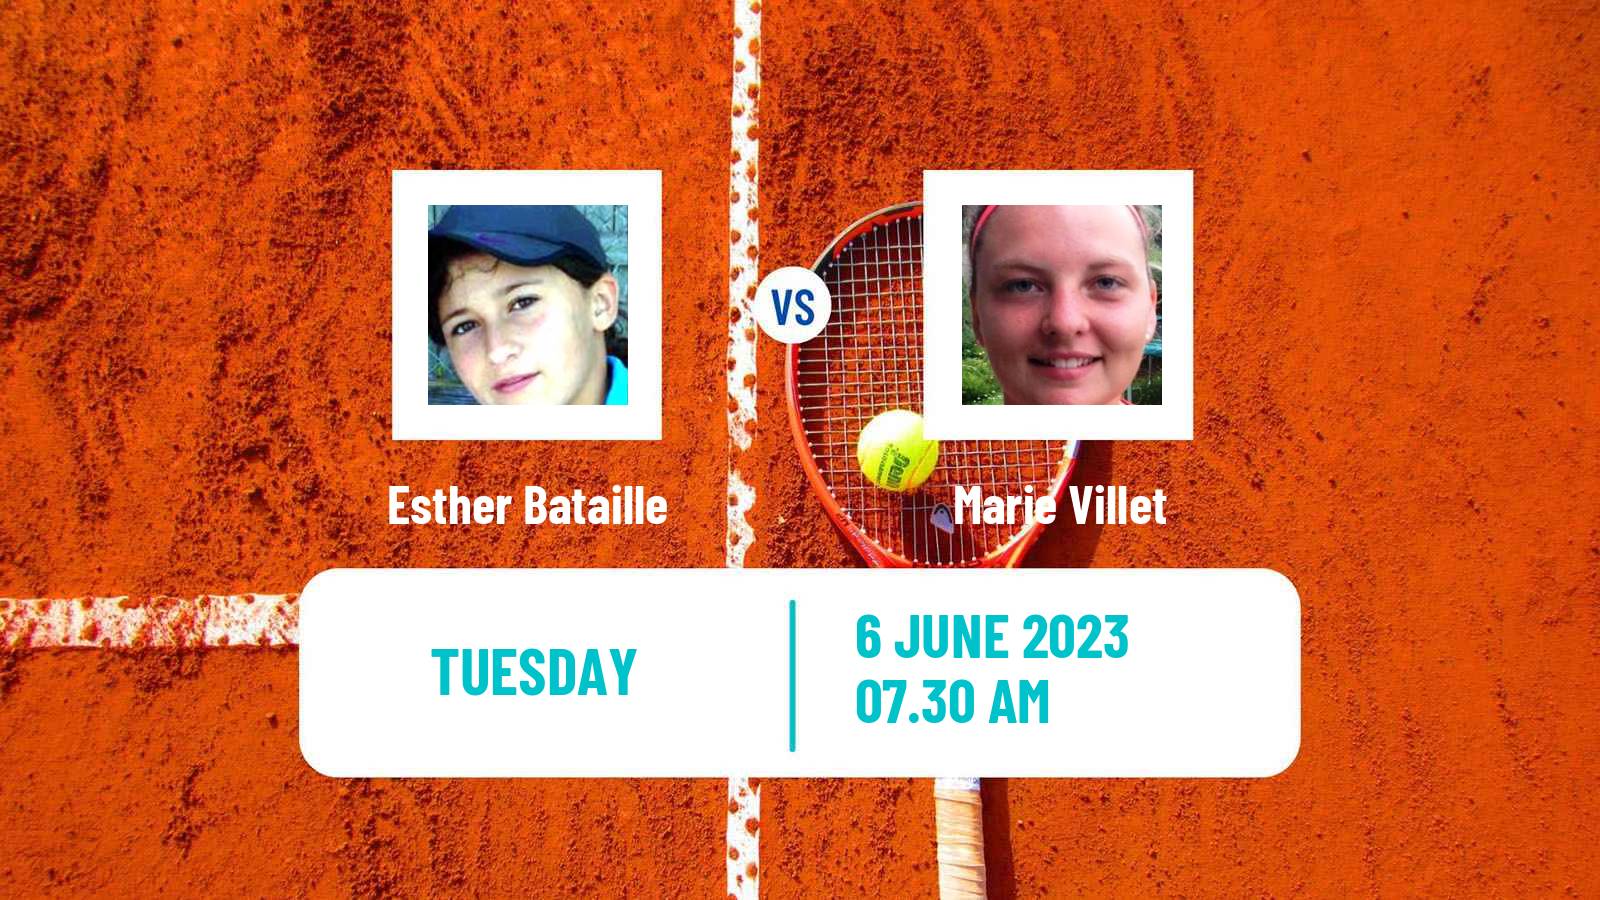 Tennis ITF W15 Monastir 18 Women 2023 Esther Bataille - Marie Villet